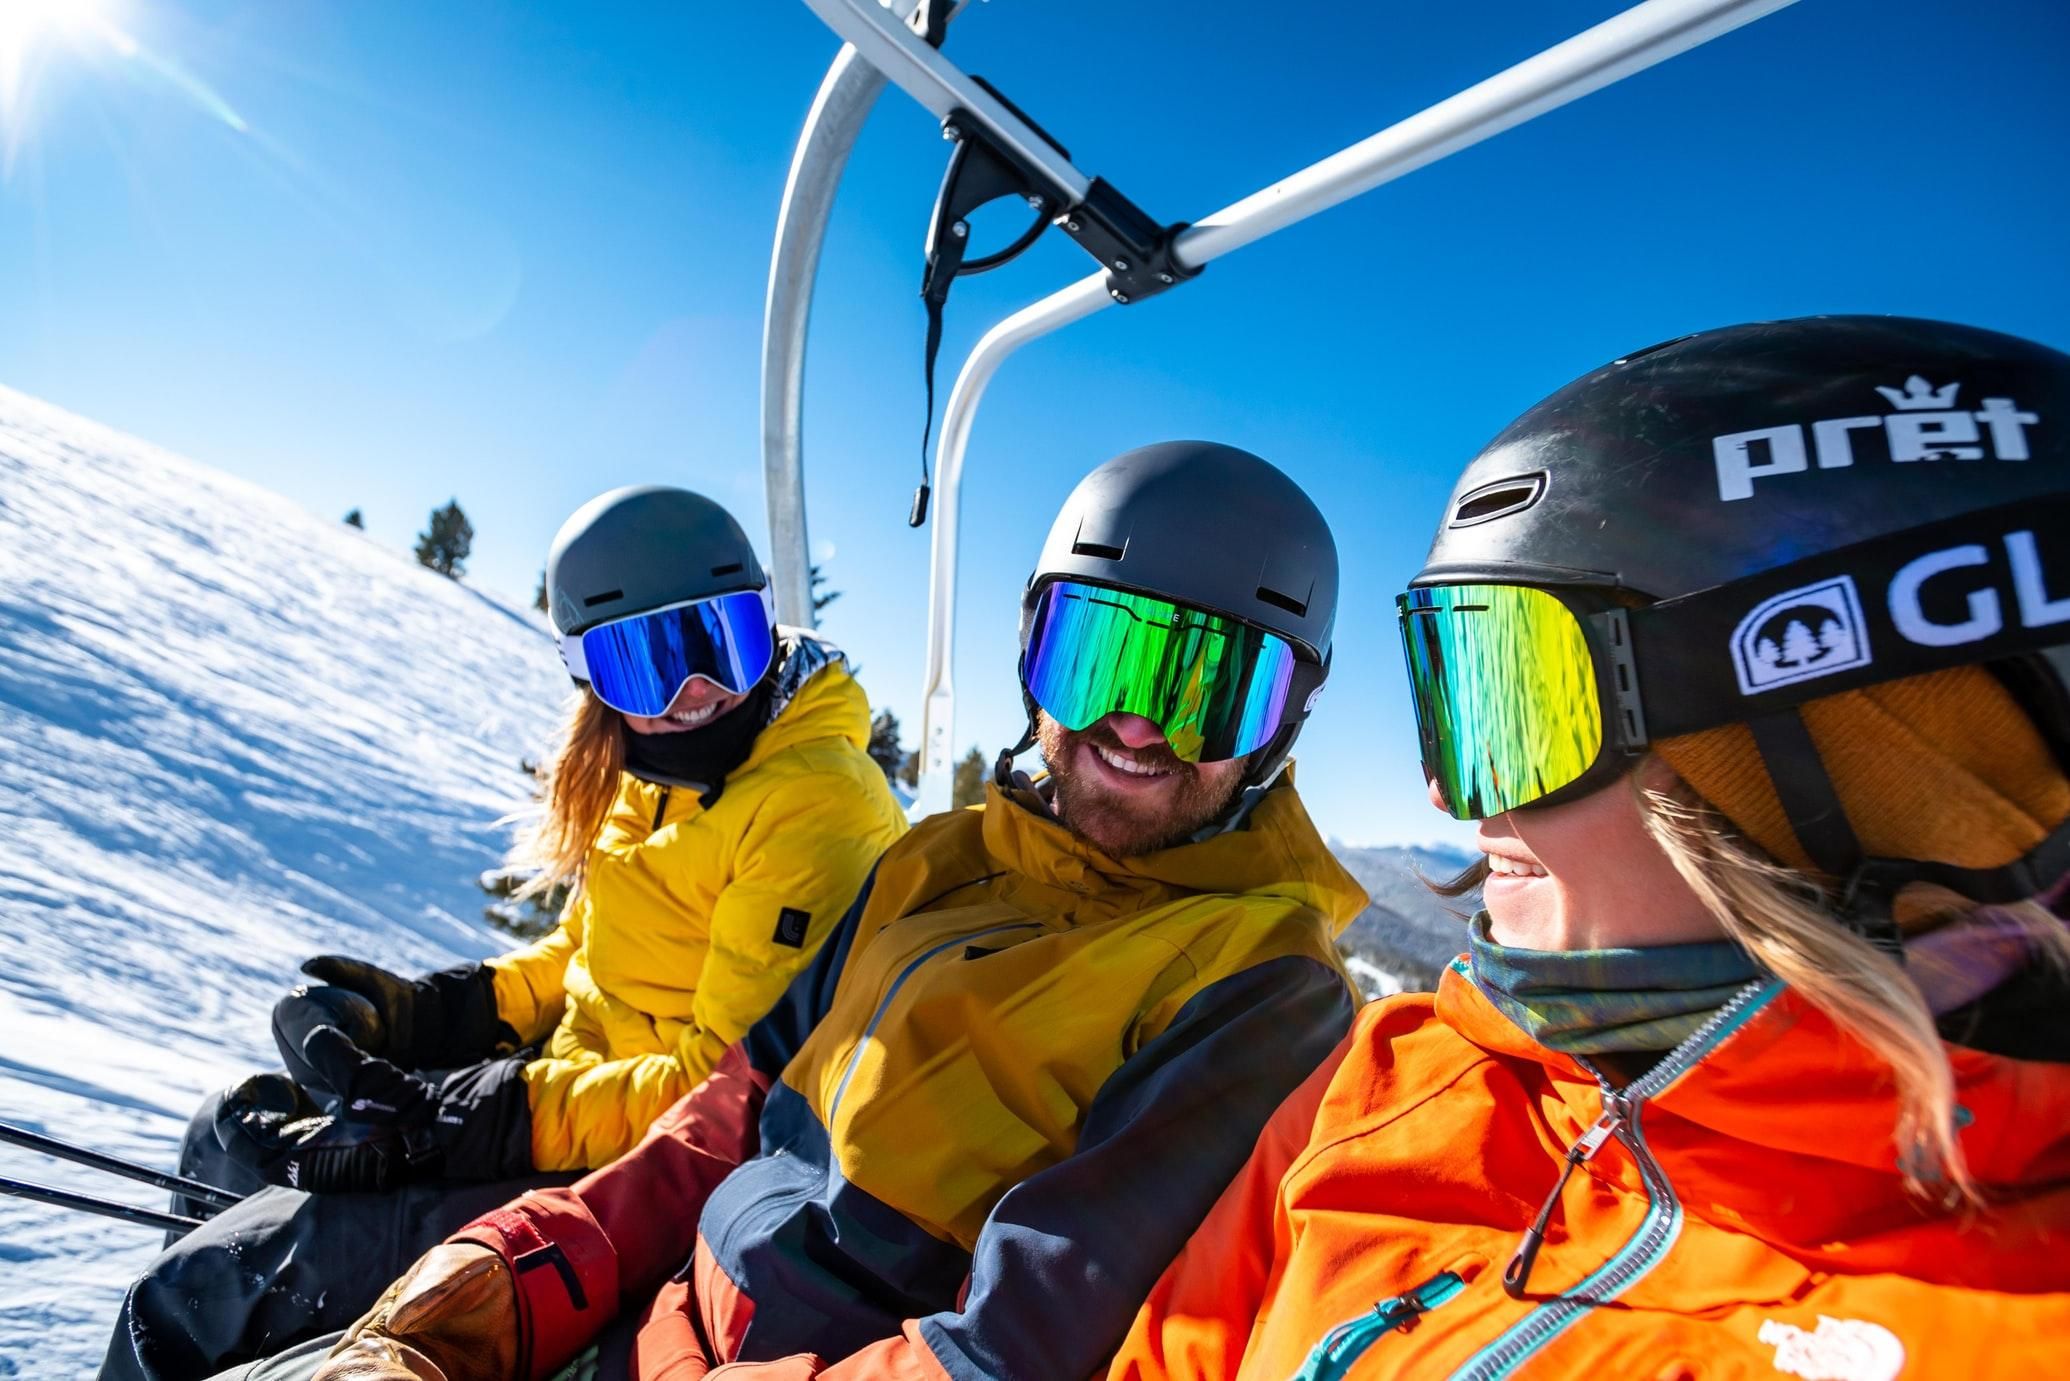 Хочу кататься, но боюсь: советы новичкам, которые помогут стать на лыжи - Отпуск